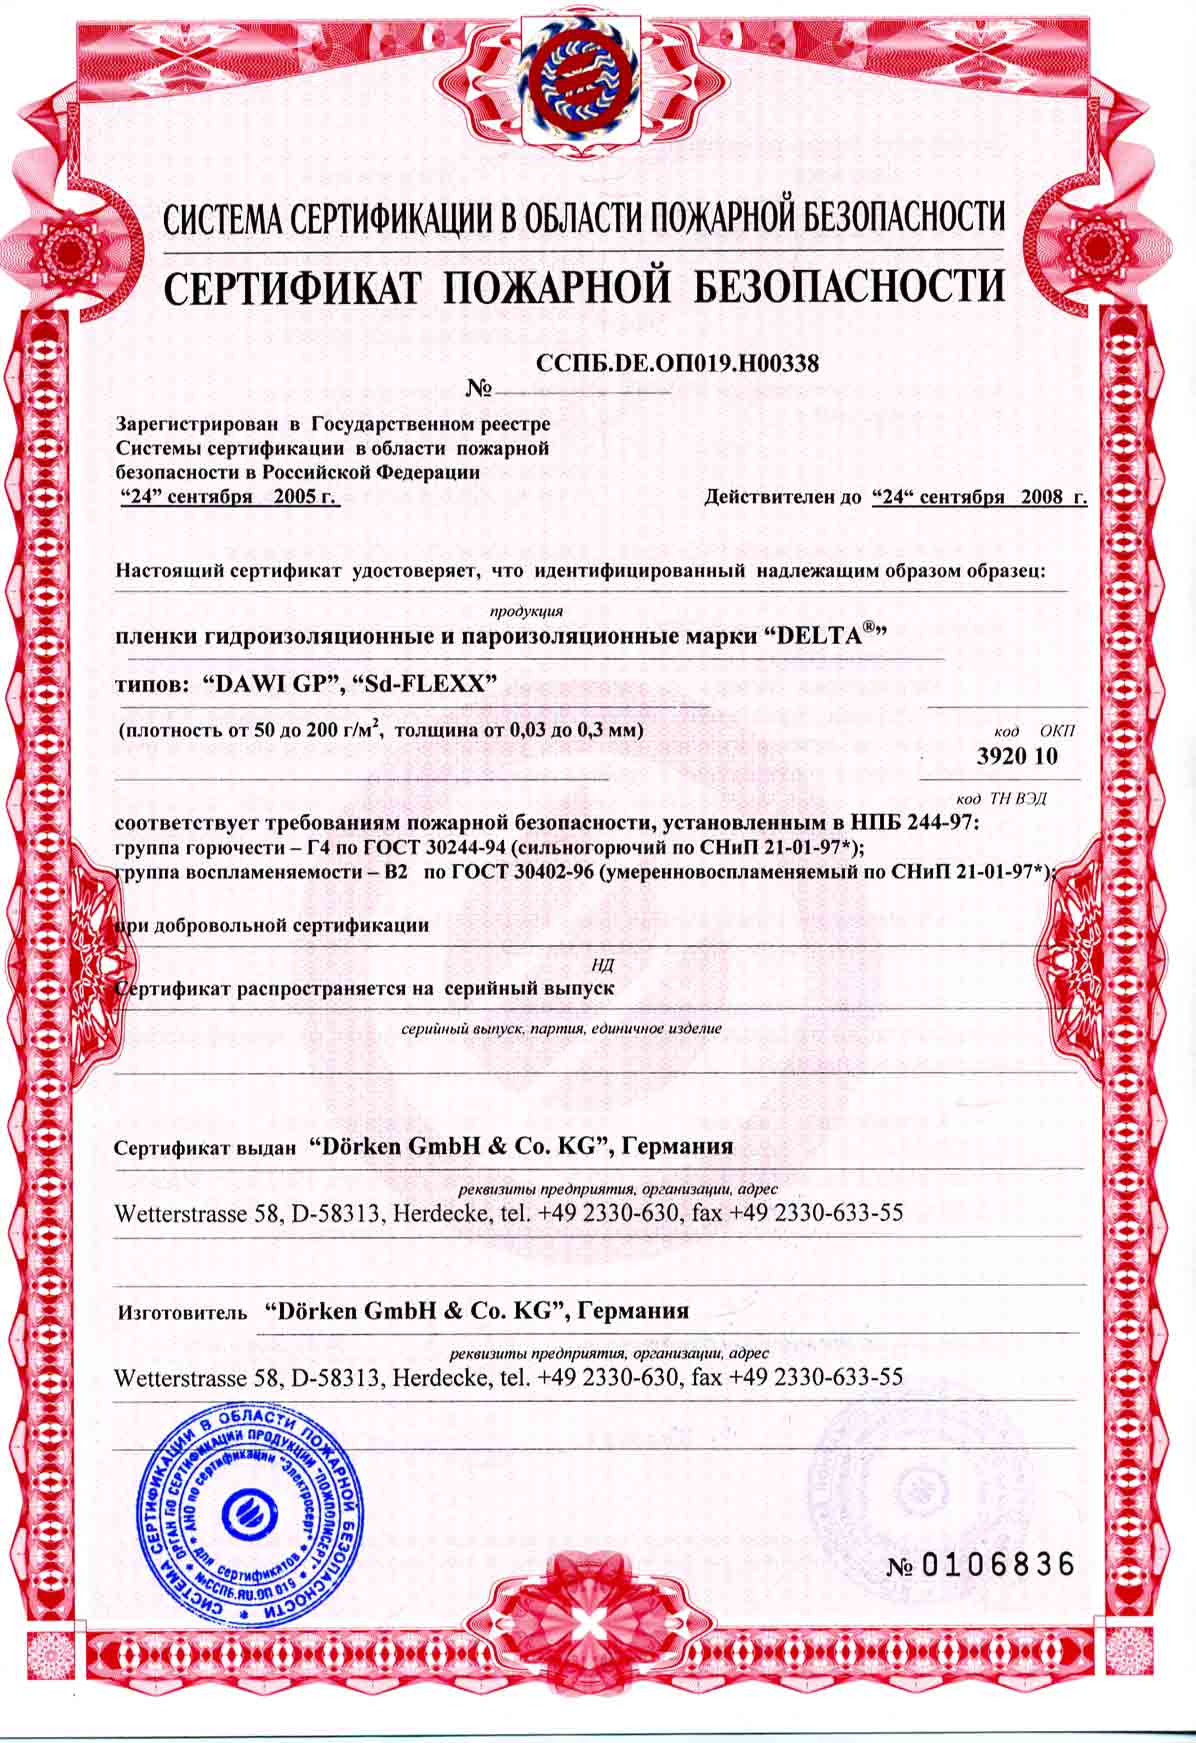 Сертификат пожарной безопасности ССПБ. Уп001.в04246